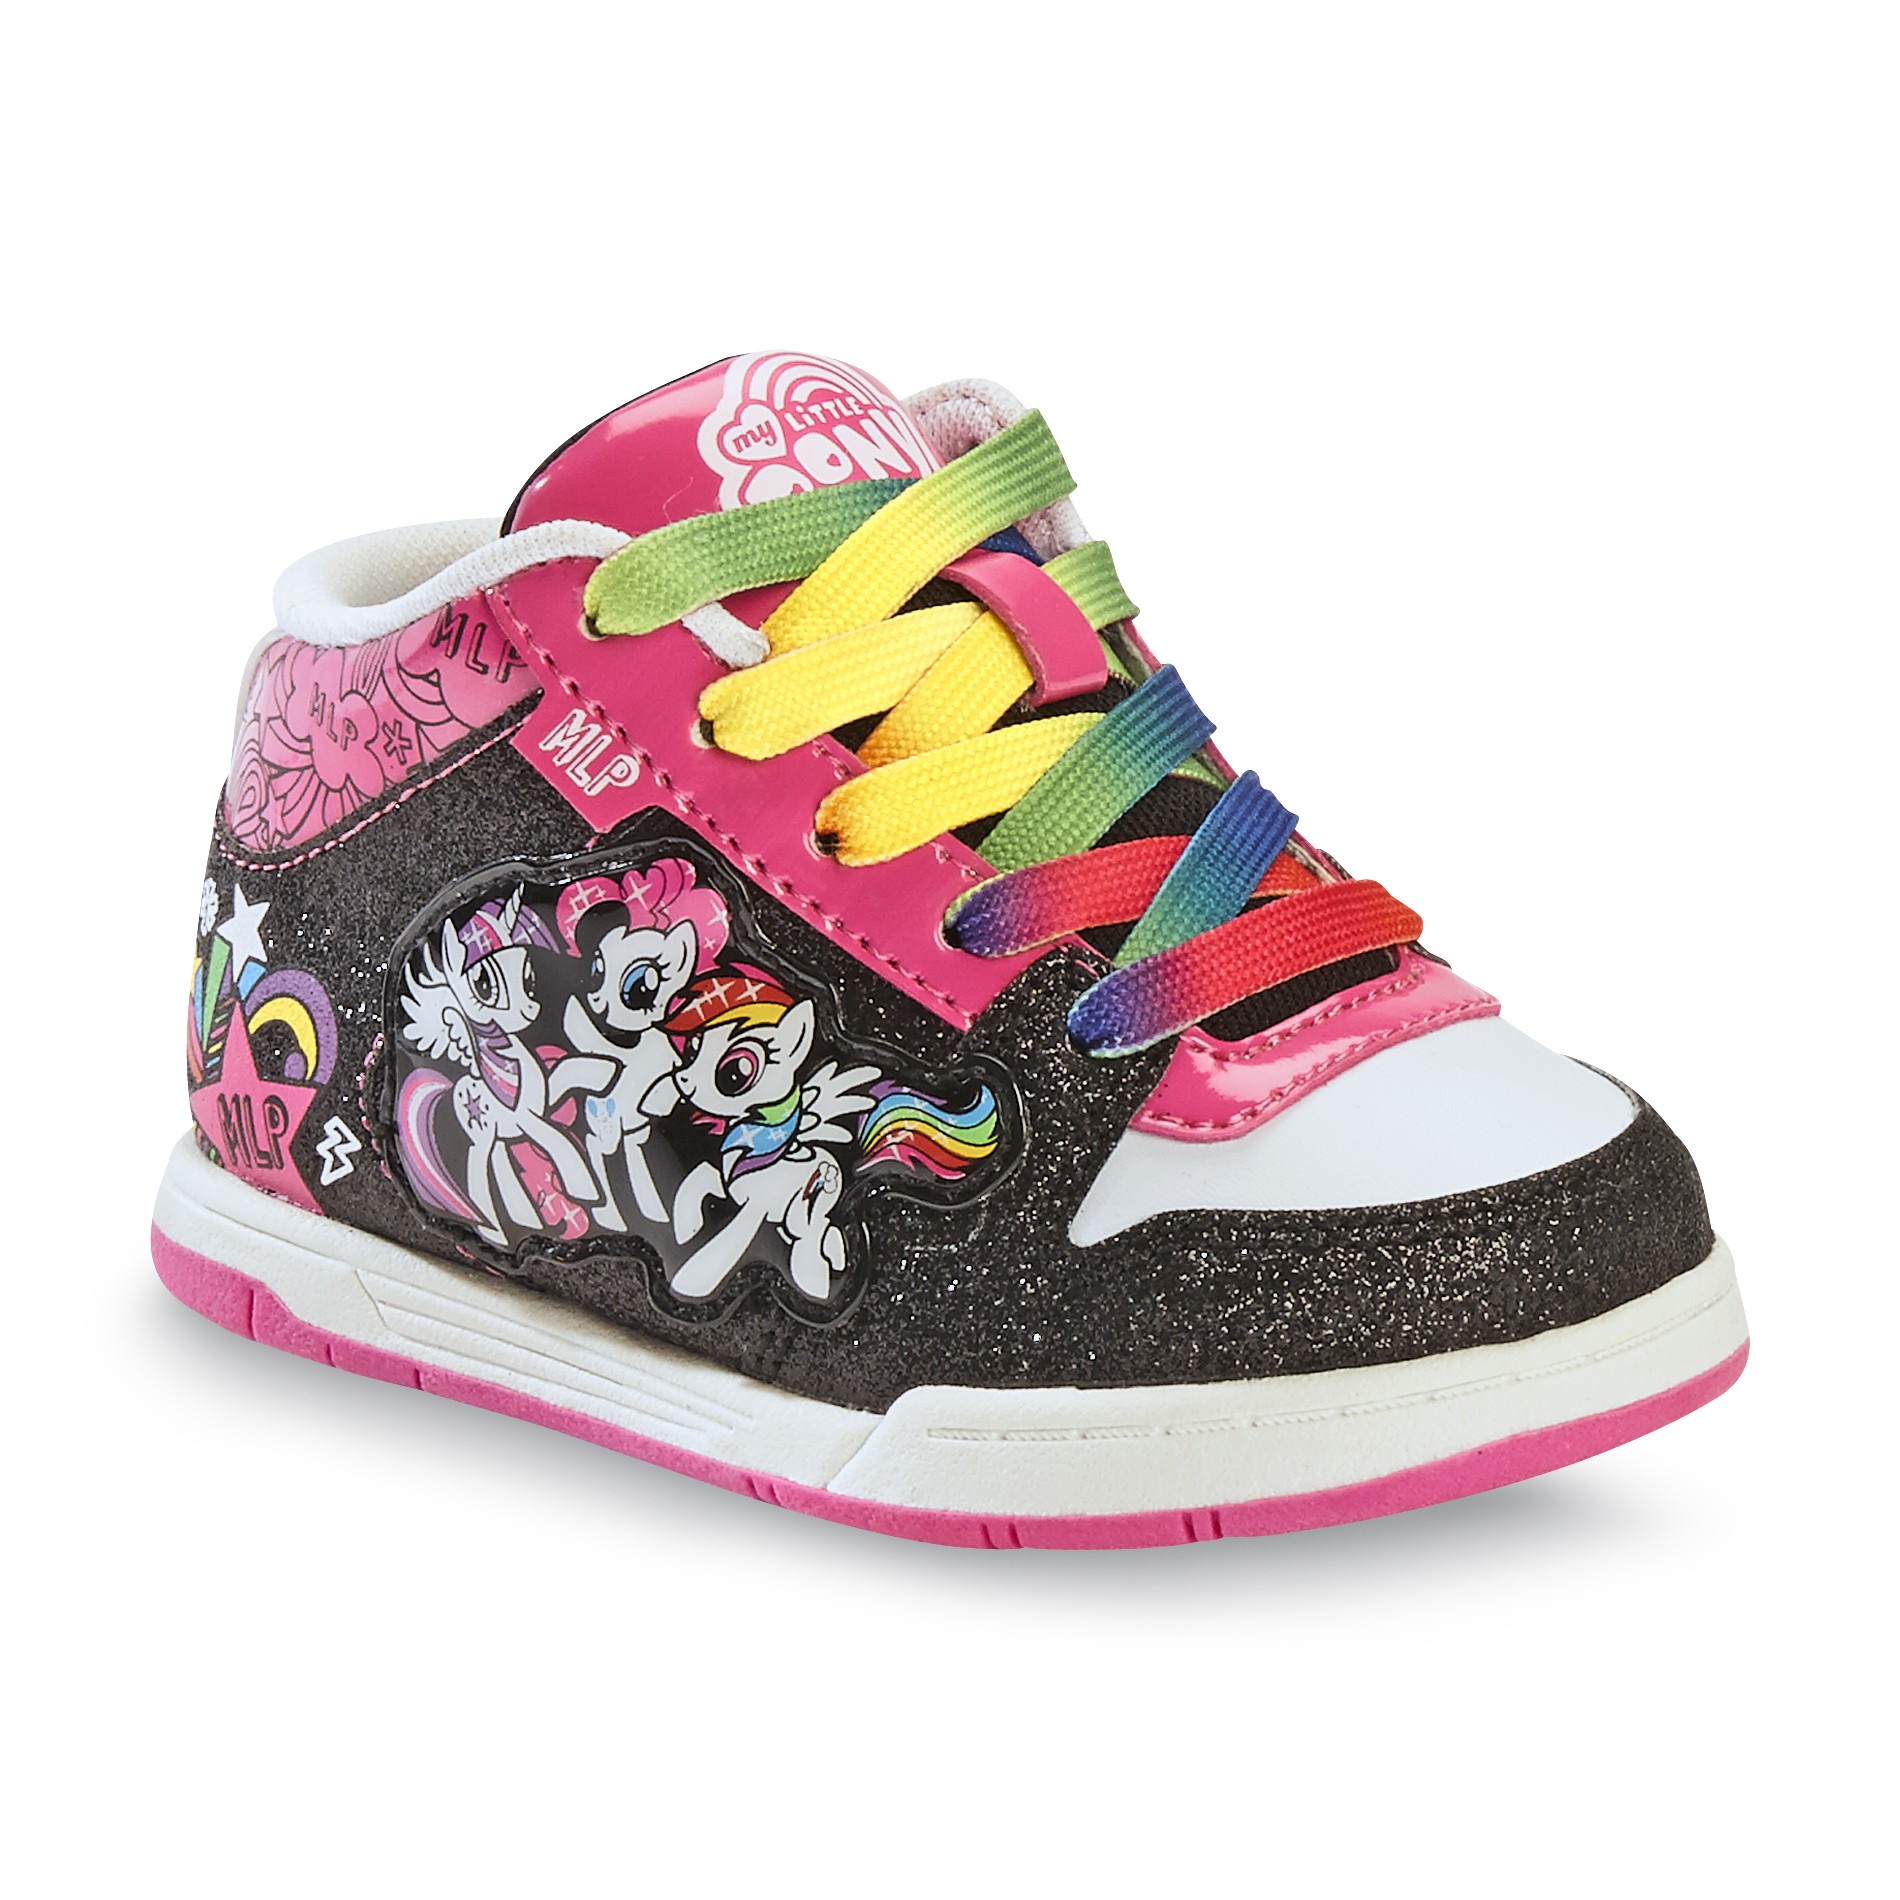 Hasbro My Little Pony Toddler Girl's Glittered Black/Multi High-Top Sneaker